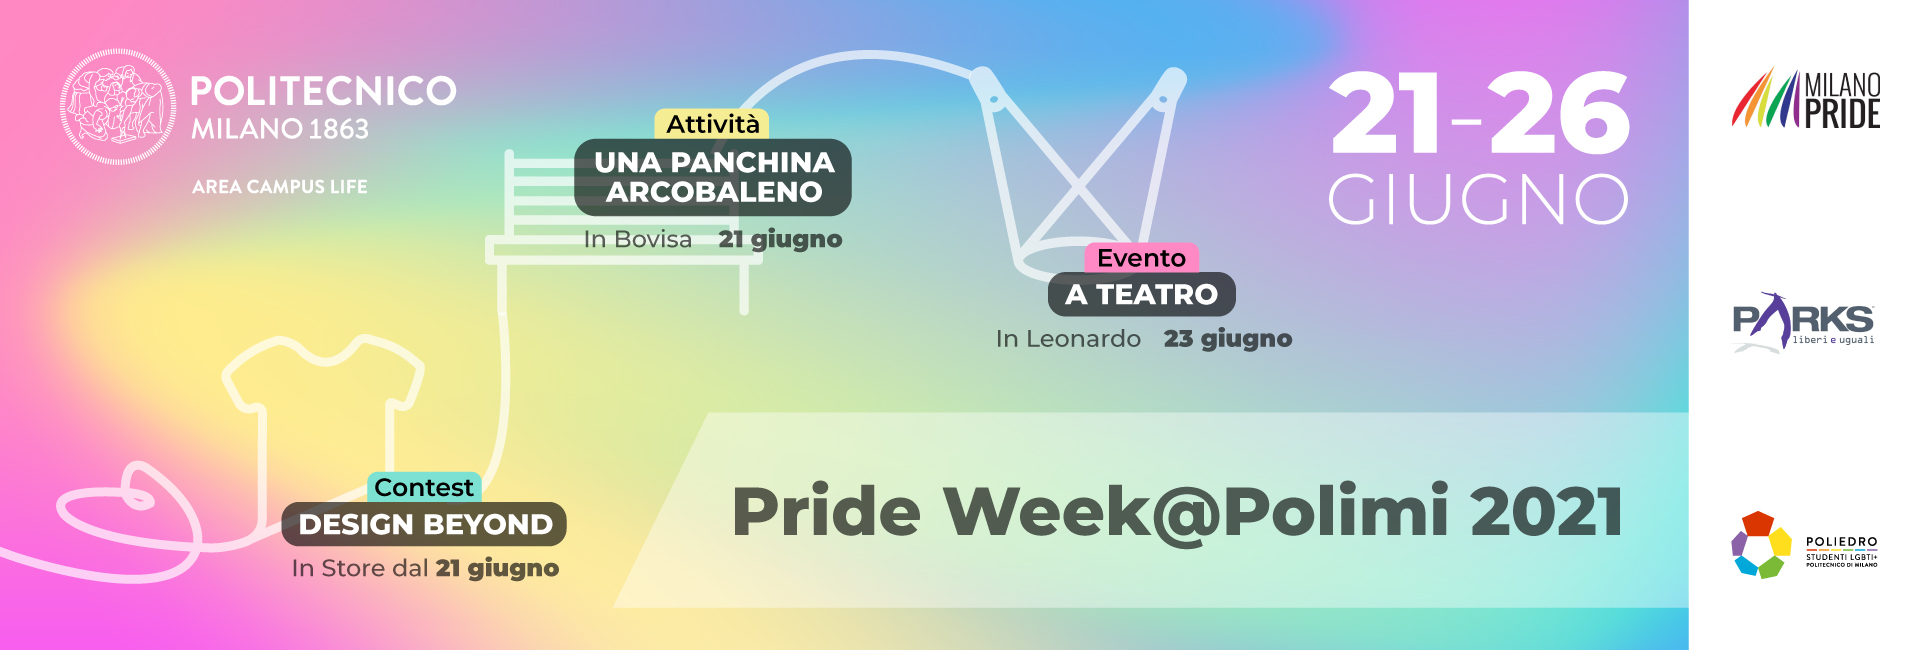 21-26 giugno - Attività: Una panchina arcobaleno (in Bovisa, 21 giugno) - Evento: A teatro (in Leonardo, 23 giugno) - Contest: Design Beyond (in Store dal 21 giugno)